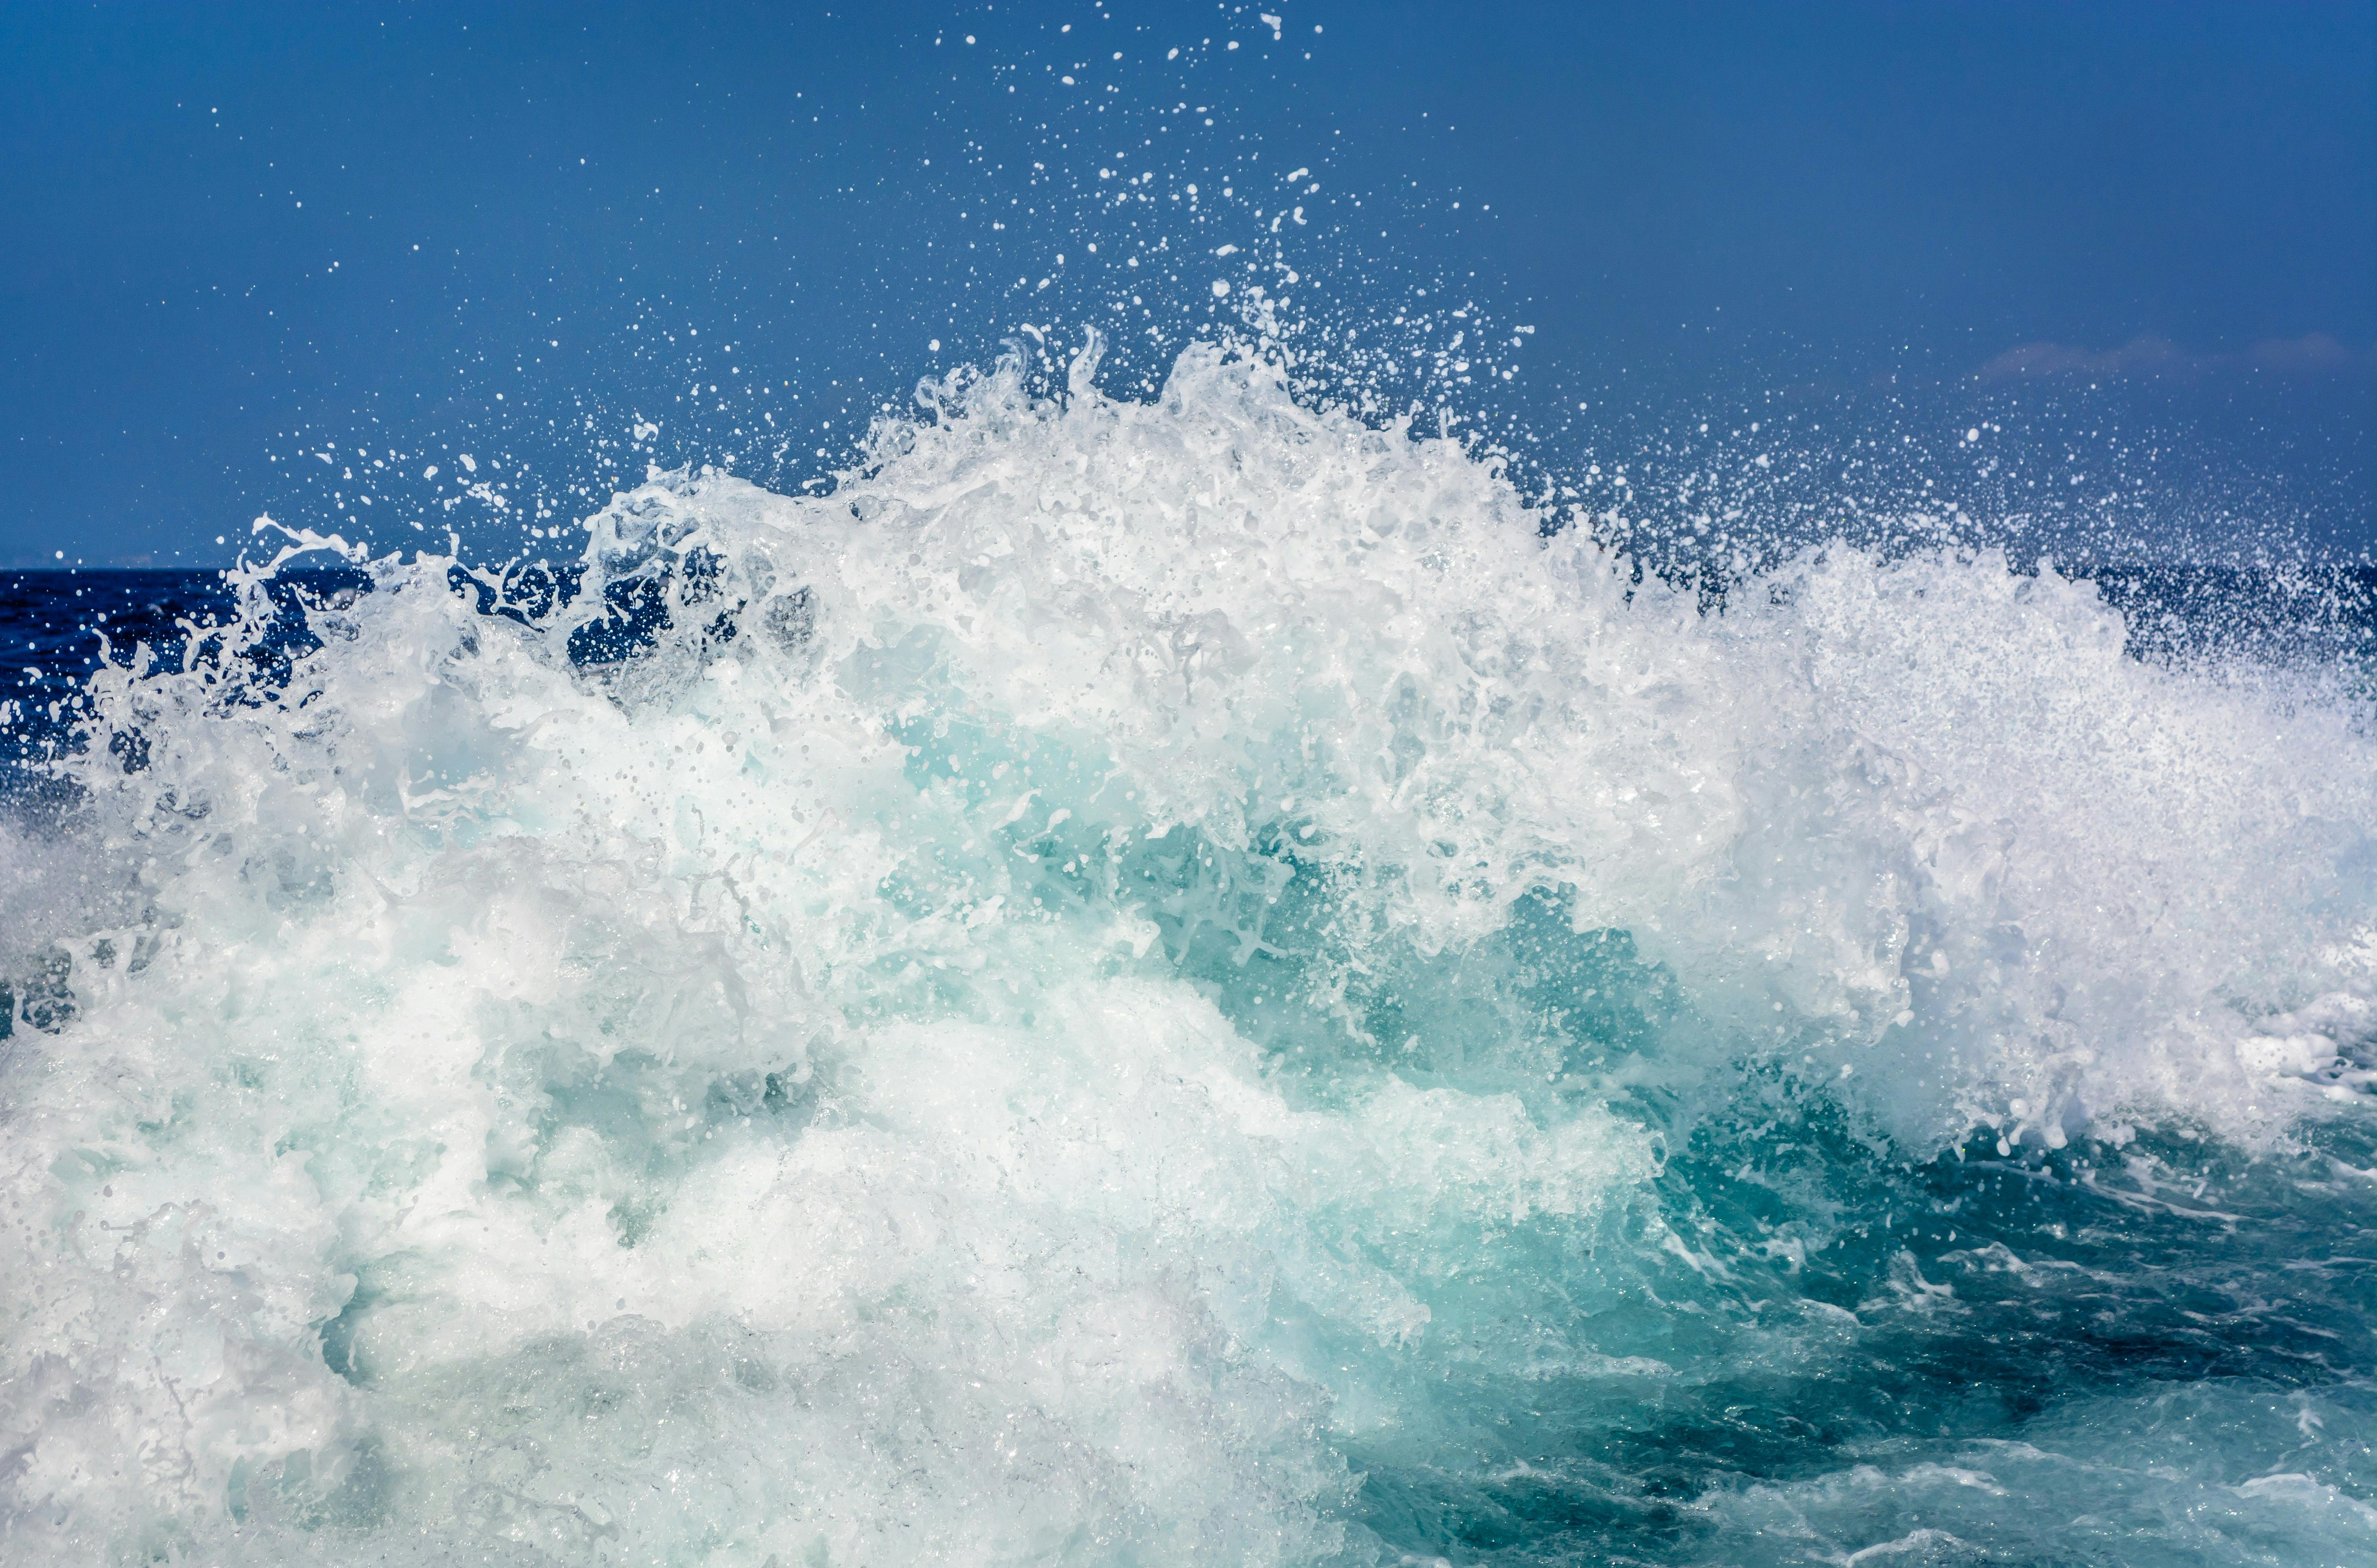 Hình nền sóng biển: Không gì thú vị hơn khi chọn hình nền sóng biển cho màn hình điện thoại của bạn. Bản thân hình ảnh đã lôi cuốn đủ để thu hút ánh nhìn của những người xung quanh, đồng thời cũng là lời nhắc nhở cho bạn những giây phút thư giãn thoải mái bên phong cảnh tuyệt đẹp.